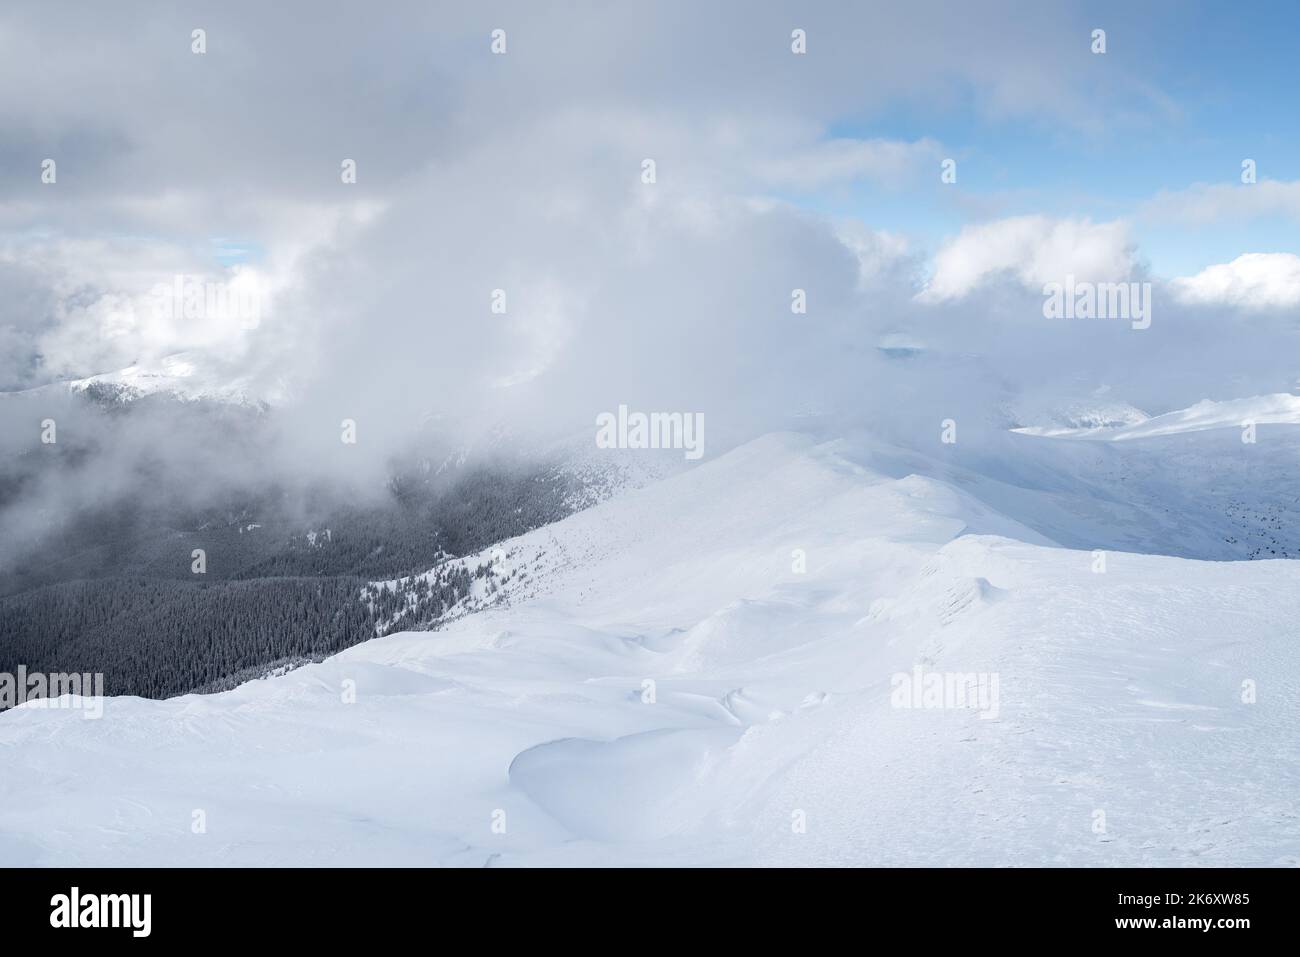 Clima invernale in montagna con nuvole basse e catena montuosa innevata Foto Stock